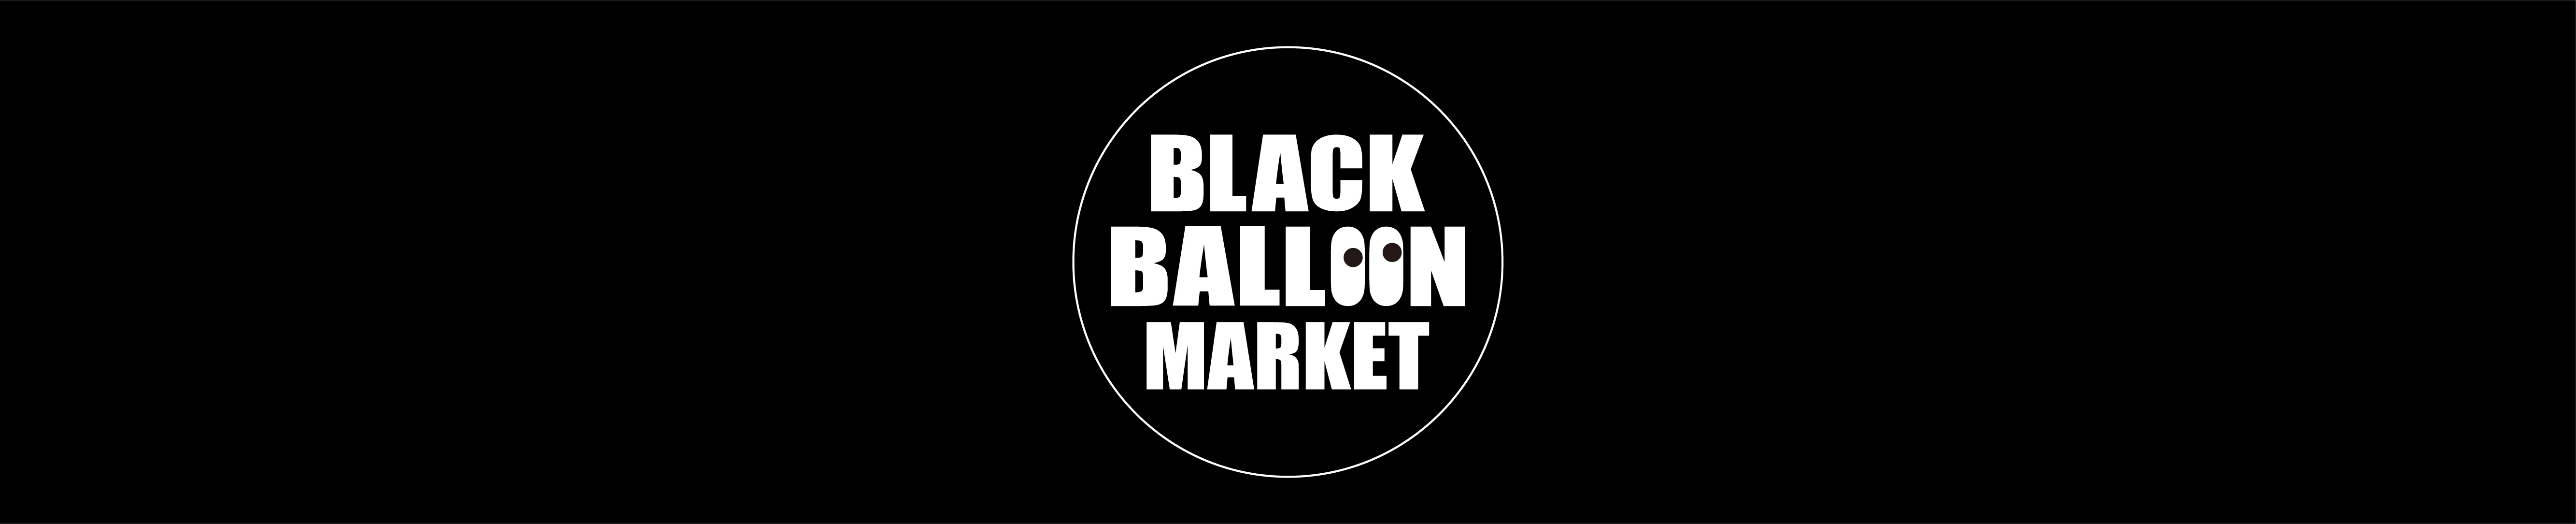 BLACK BALLOON MARKET